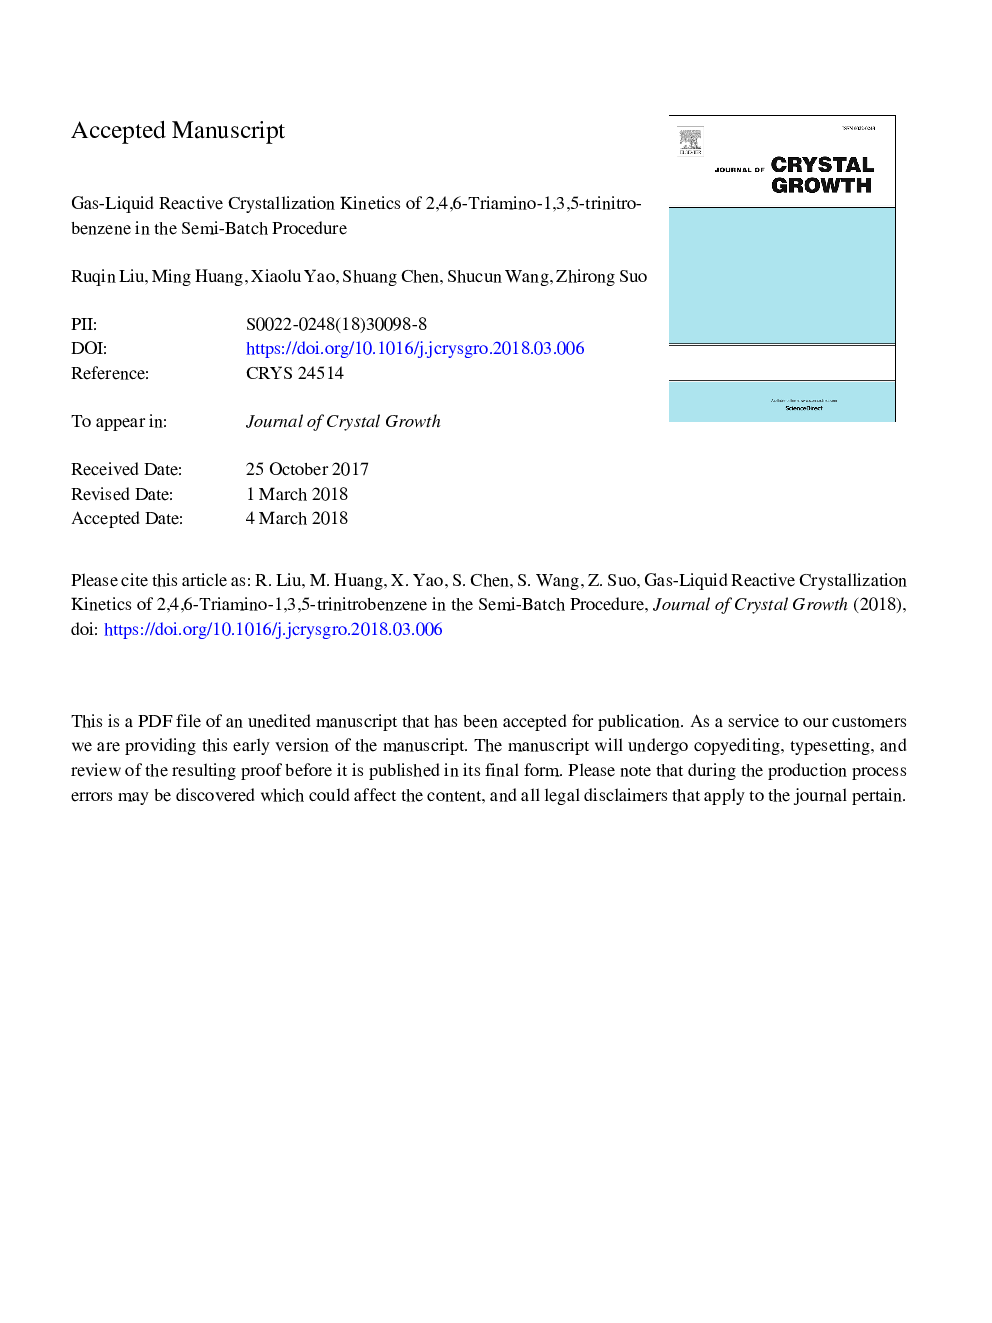 جنبشی کریستالیزاسیون واکنش گاز مایع 2،4،6-تریمینو-1،3،5-ترینیتروبنزن در روش نیمه دسته ای 